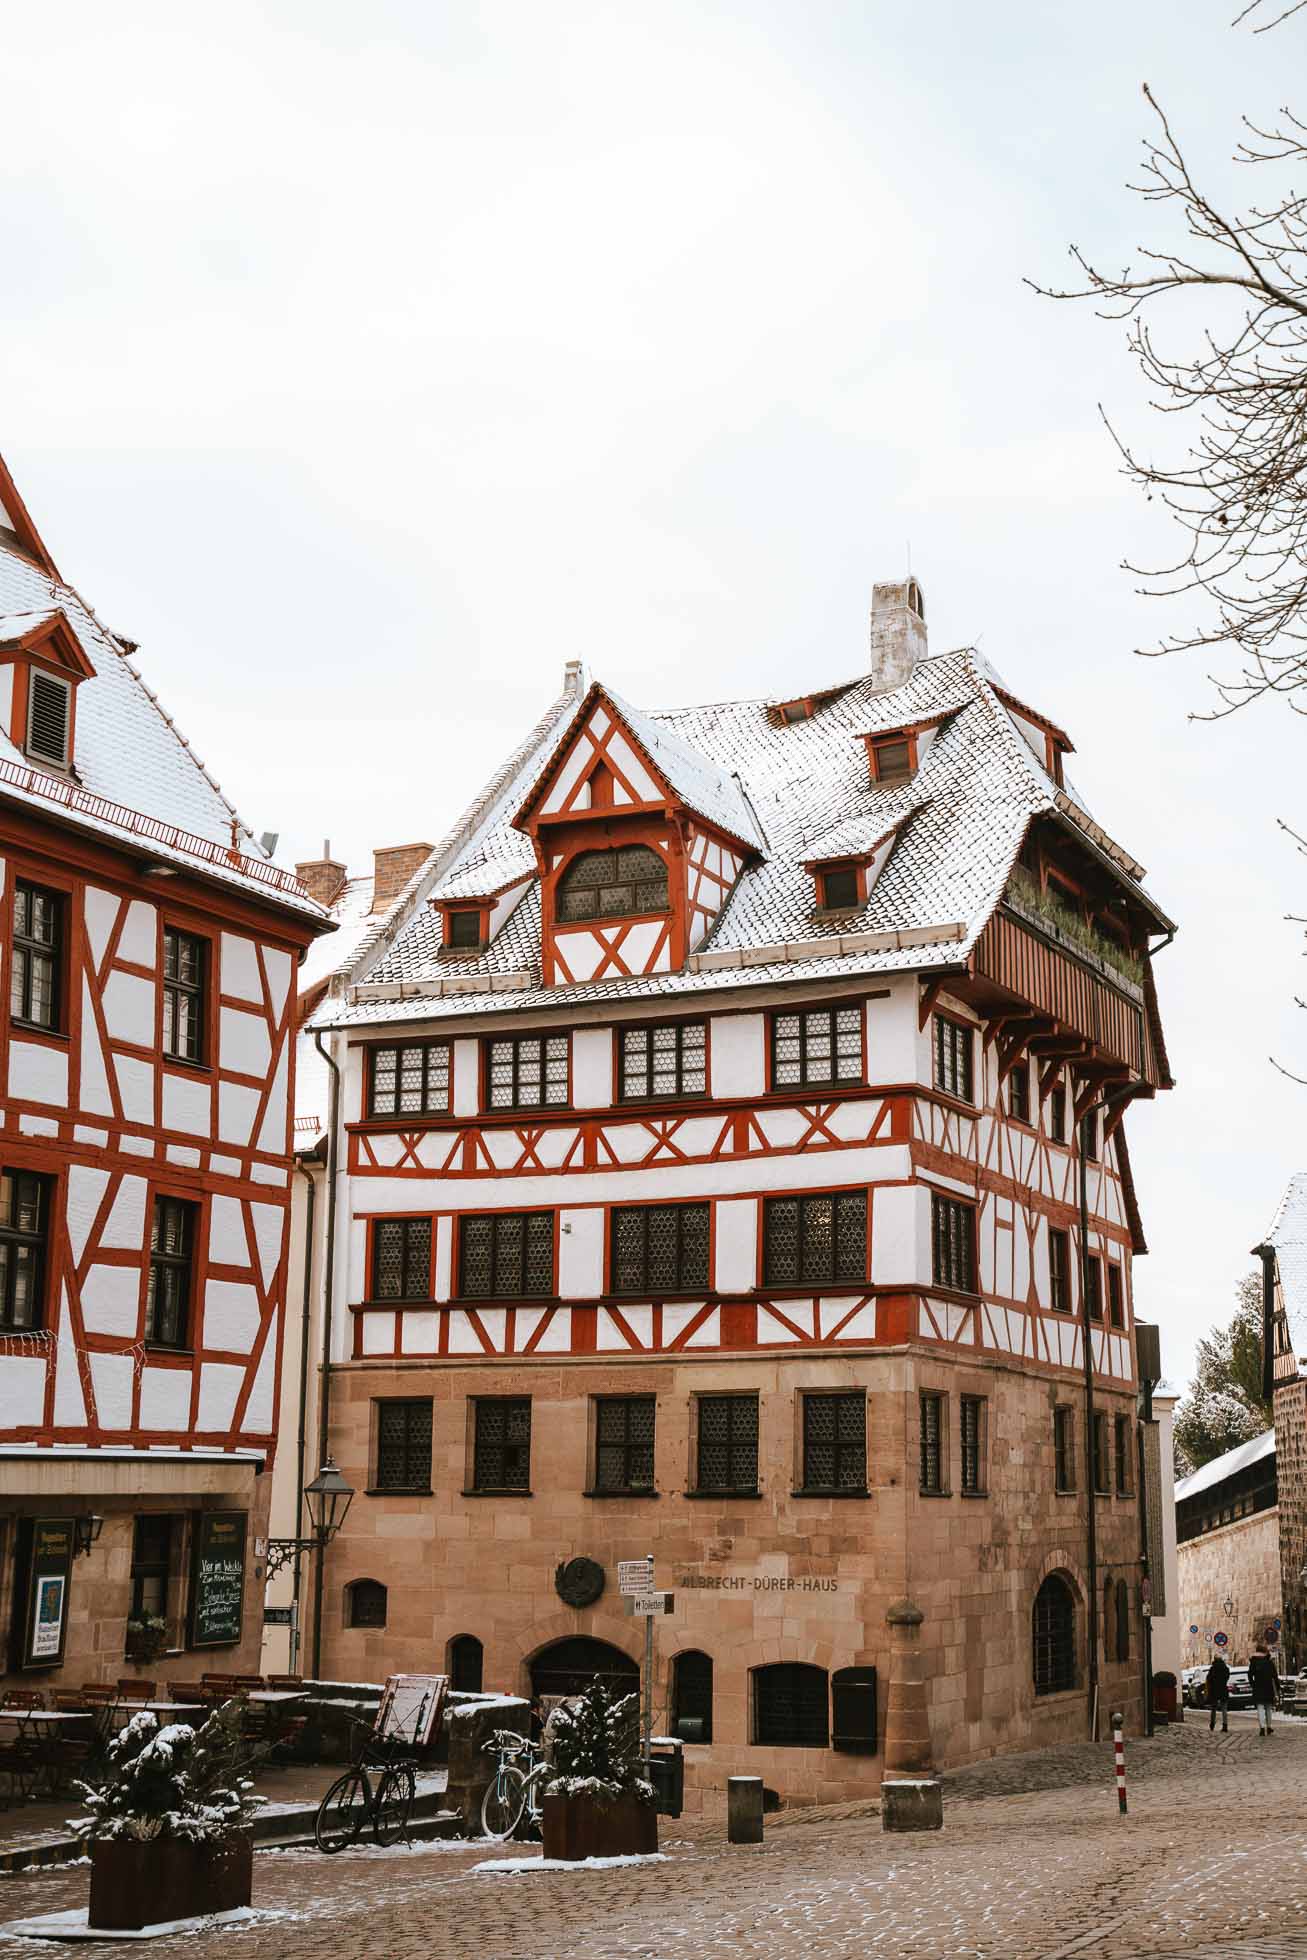 El hogar donde vivió el pintor Albrecht Dürer y algo interesante que ver en Nuremberg